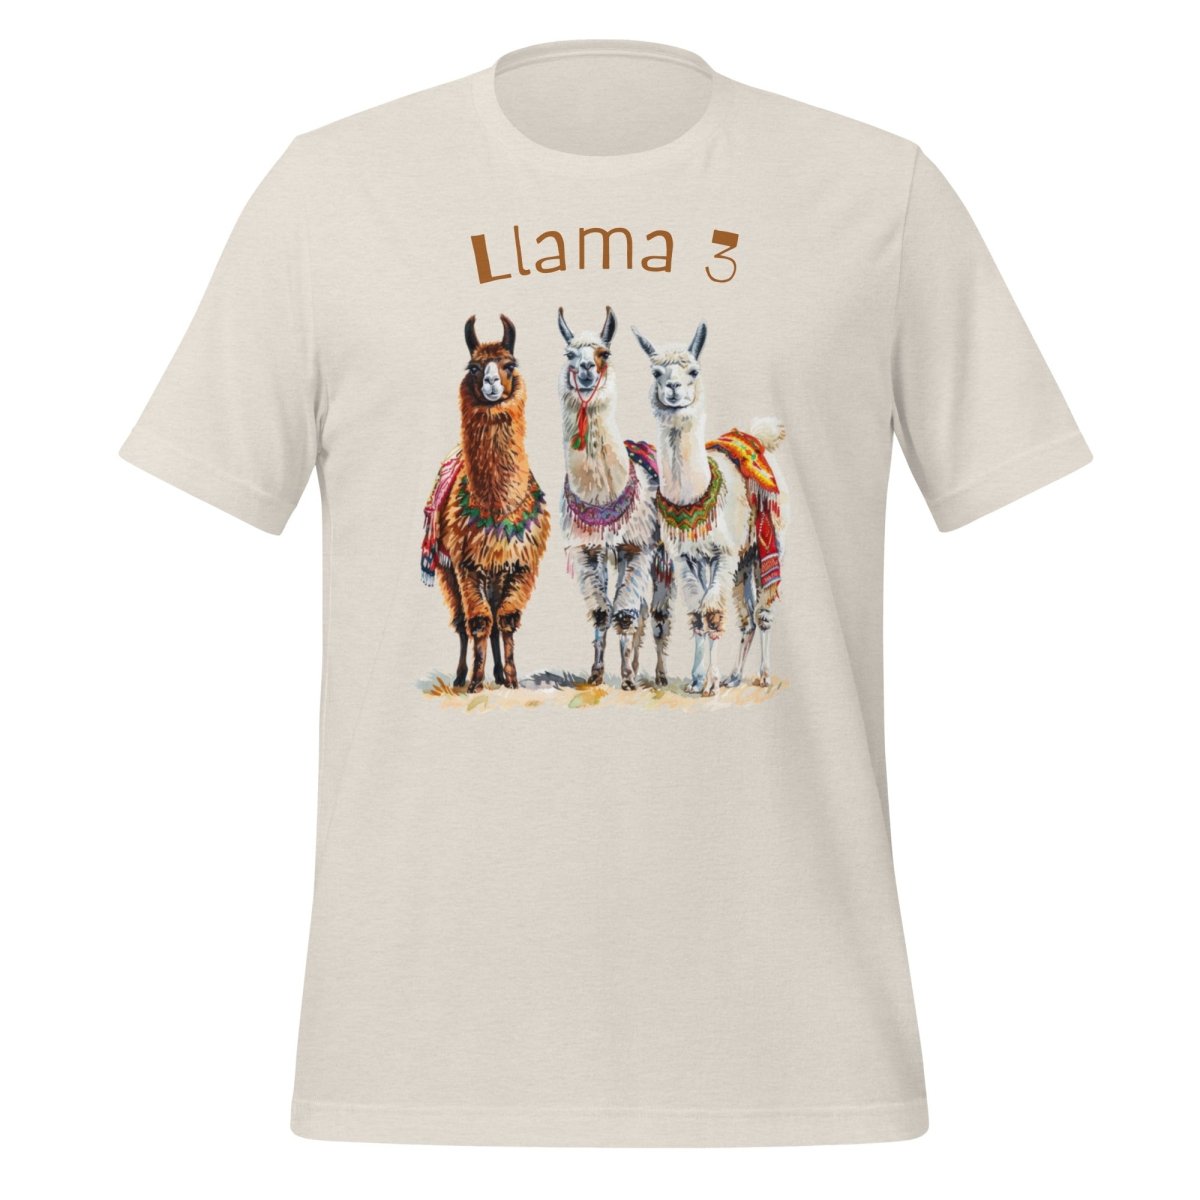 3 Llama 3 Llamas T - Shirt (unisex) - Heather Dust - AI Store